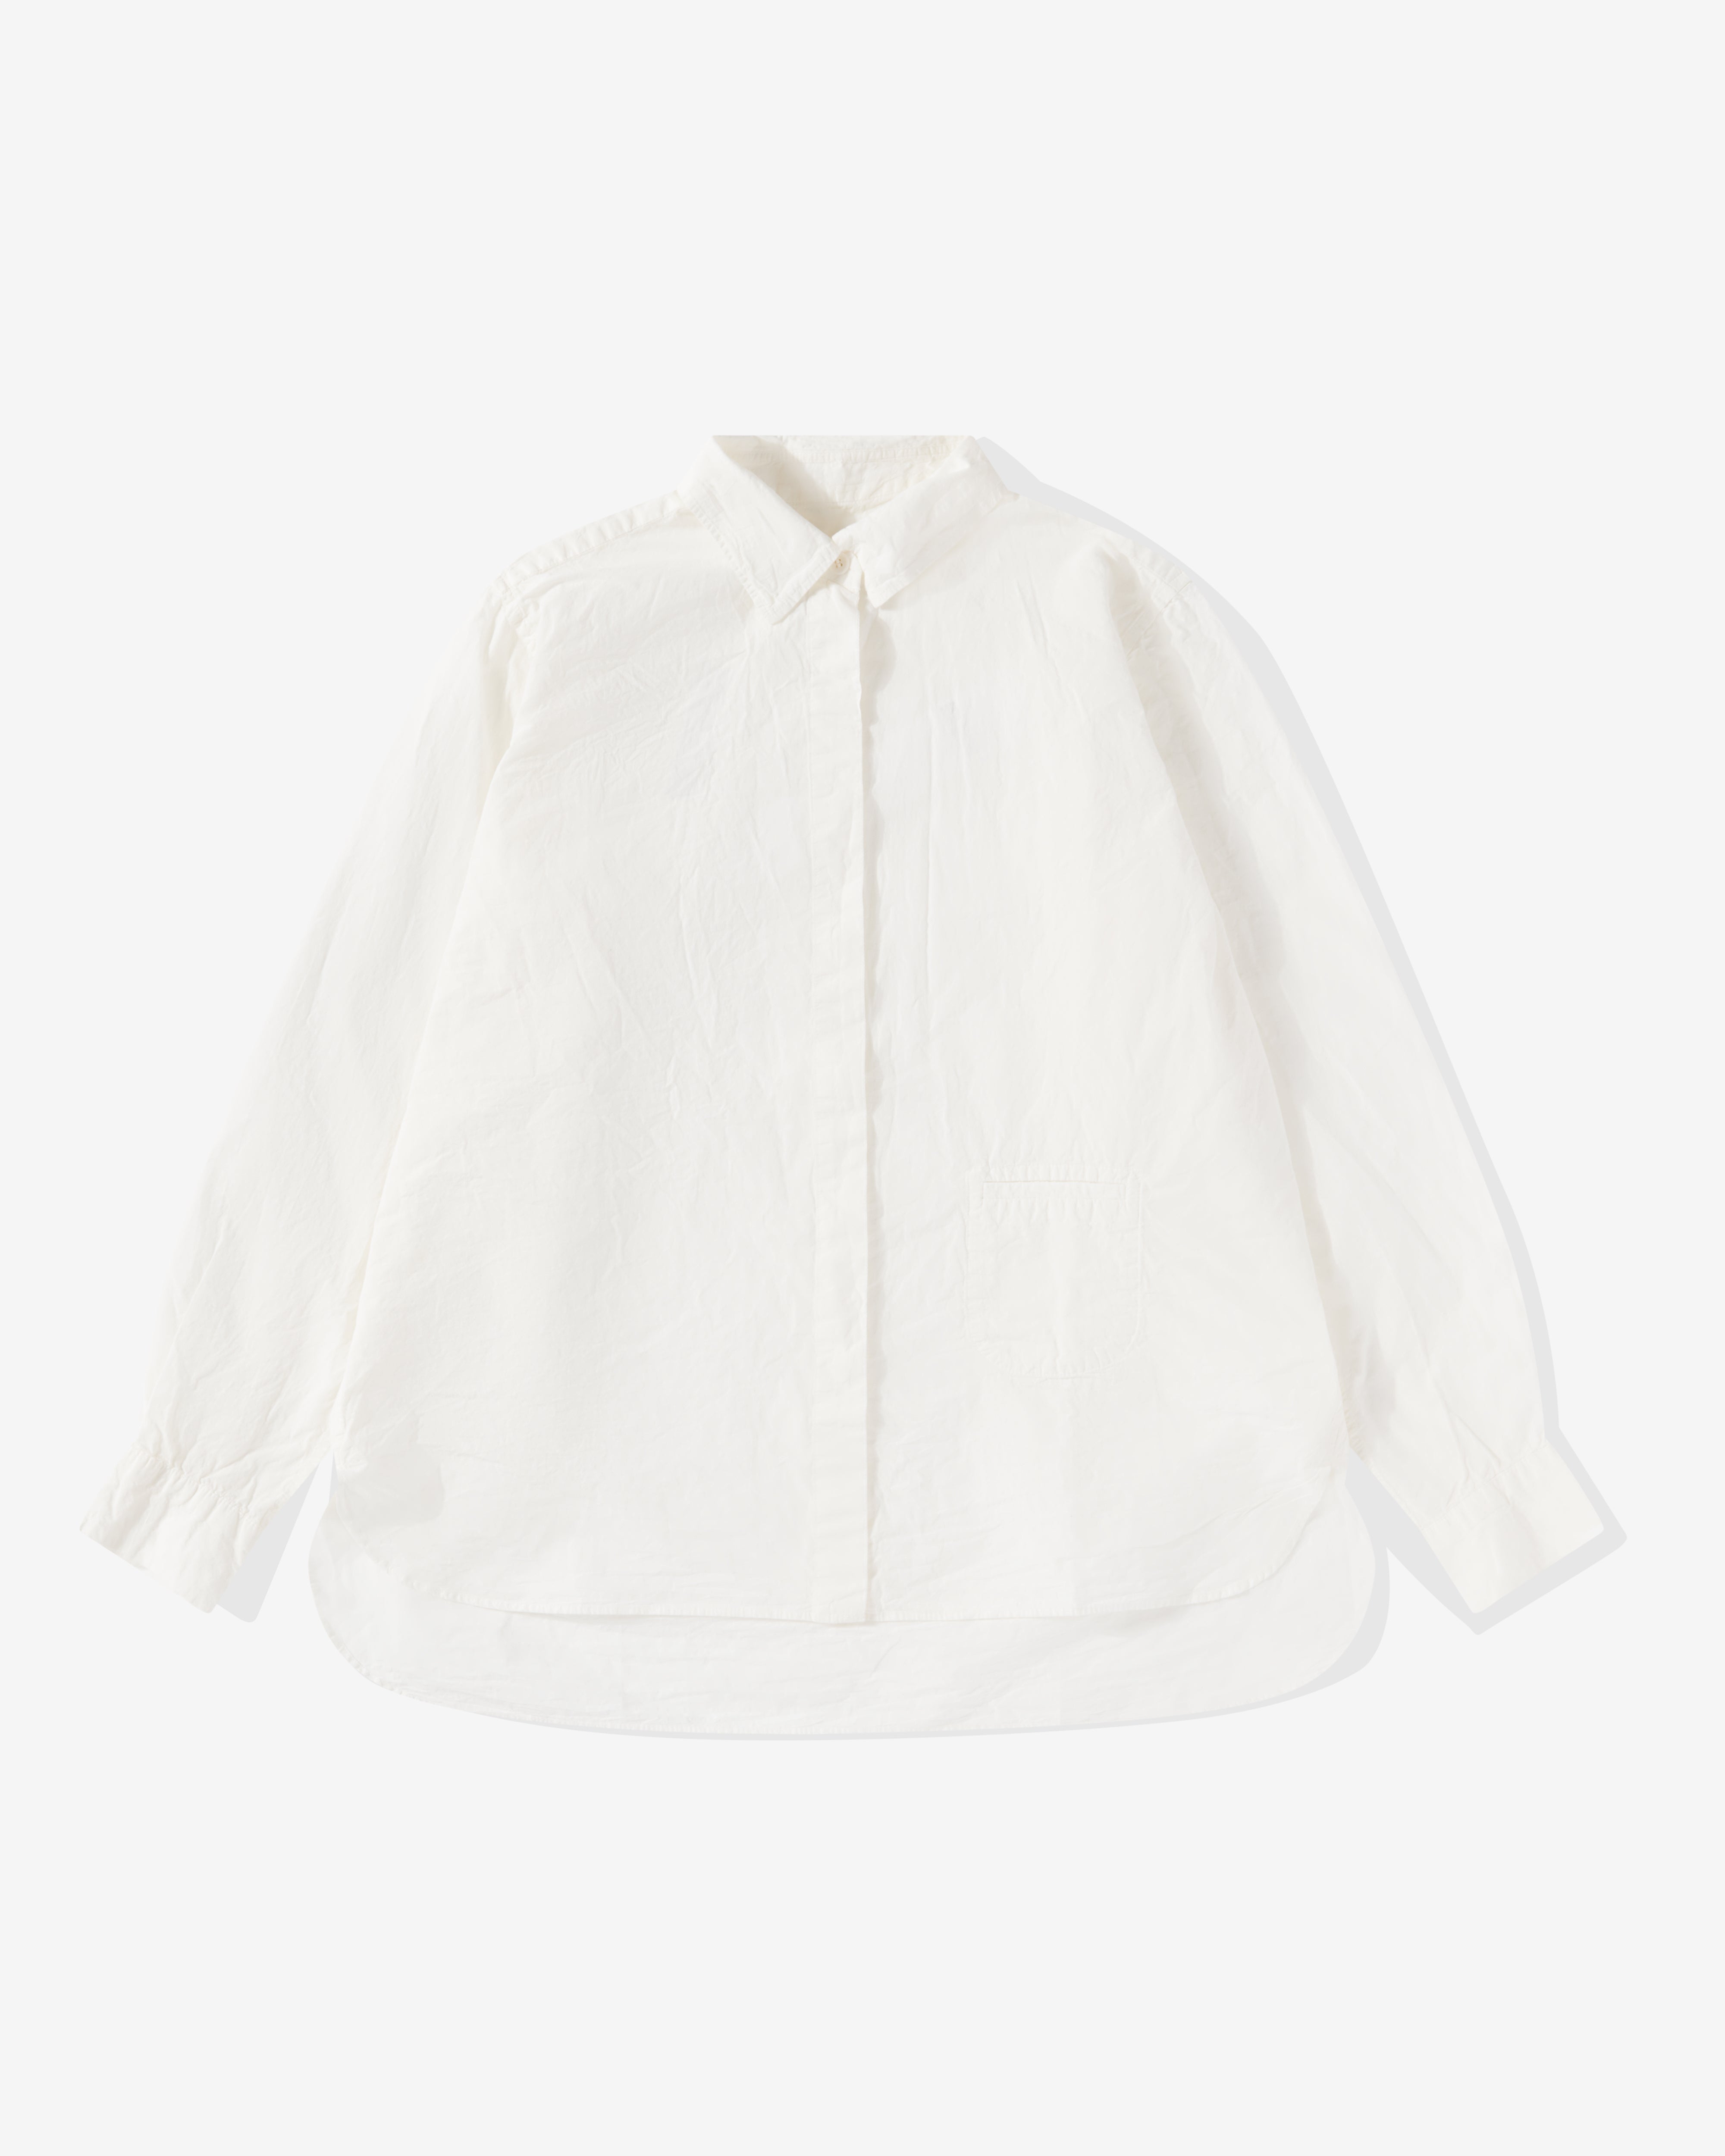 CASEY CASEY - Women's Marie Shirt - (White) | Dover Street Market E ...